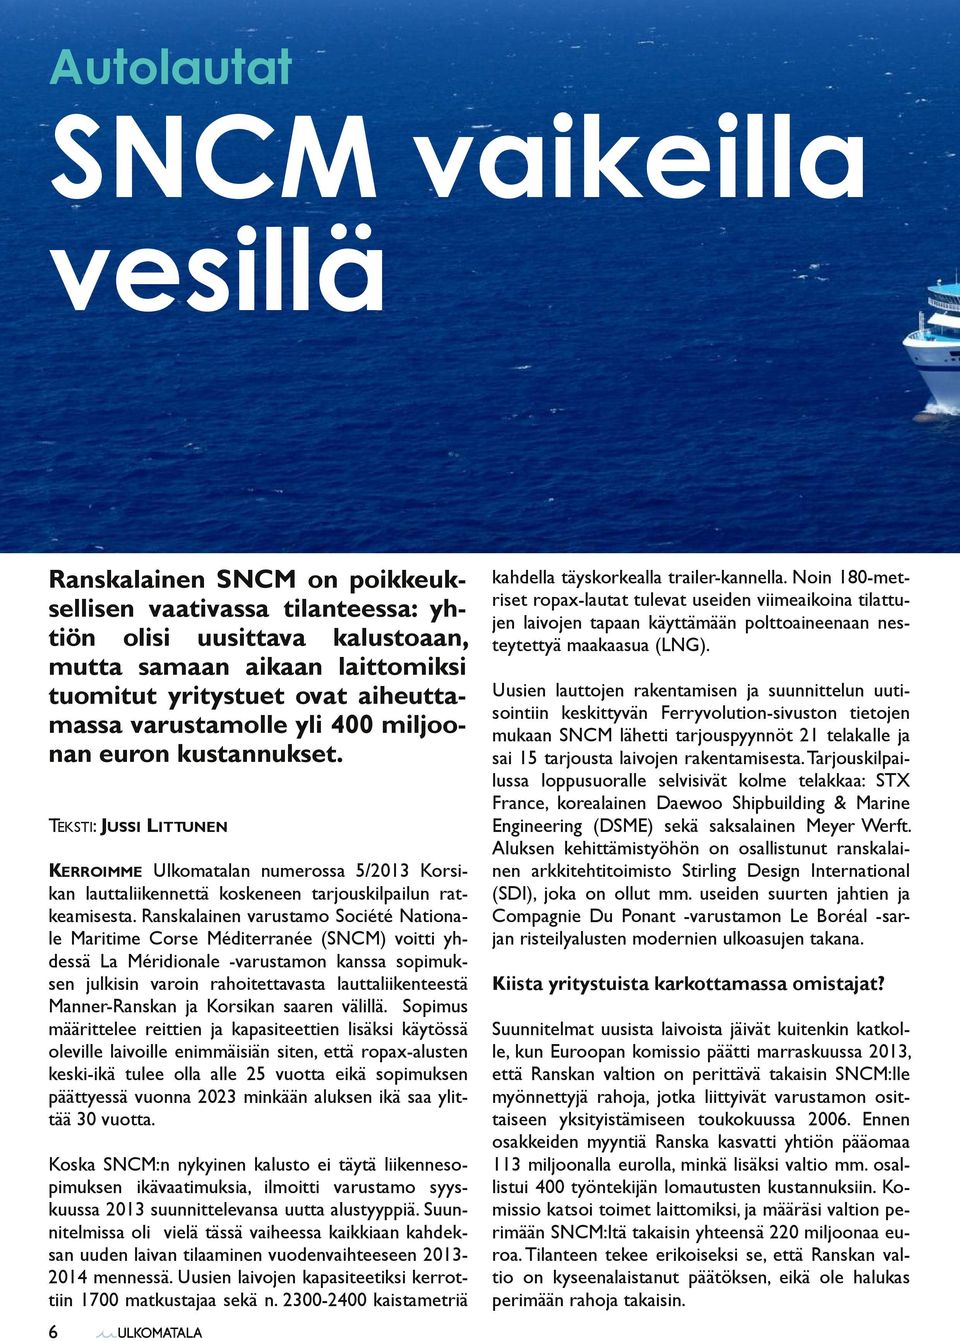 Ranskalainen varustamo Société Nationale Maritime Corse Méditerranée (SNCM) voitti yhdessä La Méridionale -varustamon kanssa sopimuksen julkisin varoin rahoitettavasta lauttaliikenteestä